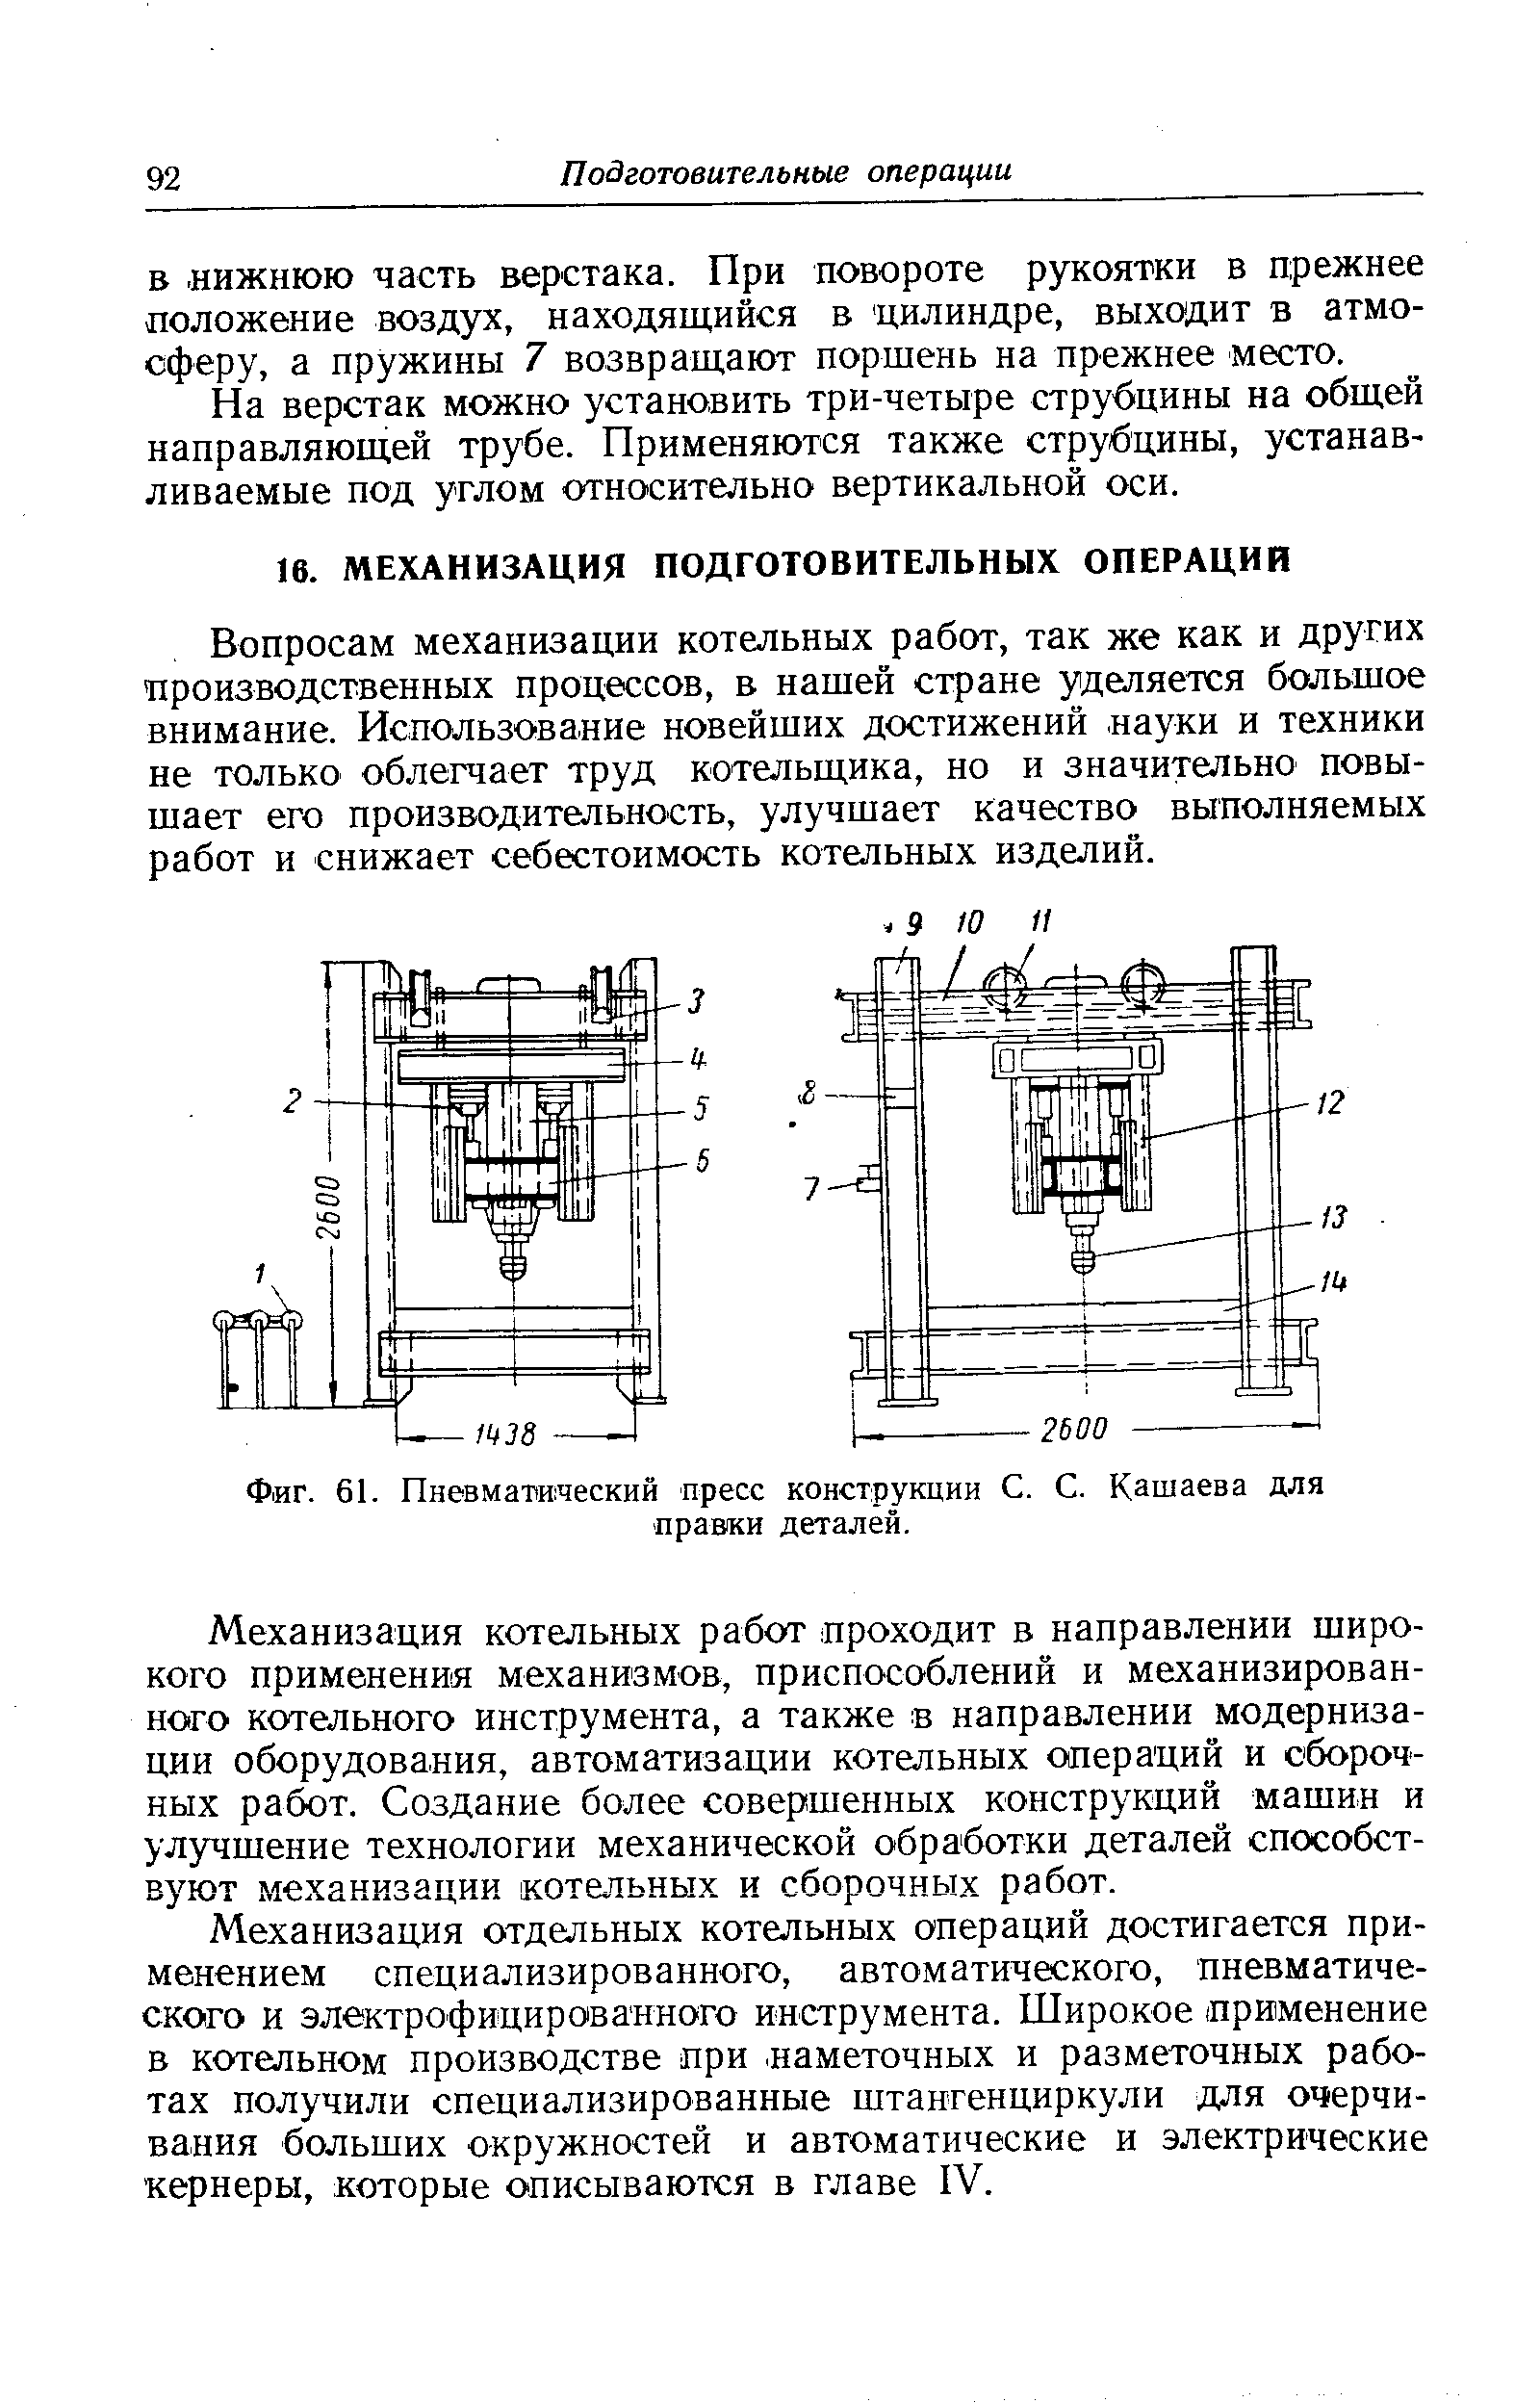 Фиг. 61. Пневмапвческий пресс конструкции С. С. Катаева для правки деталей.
